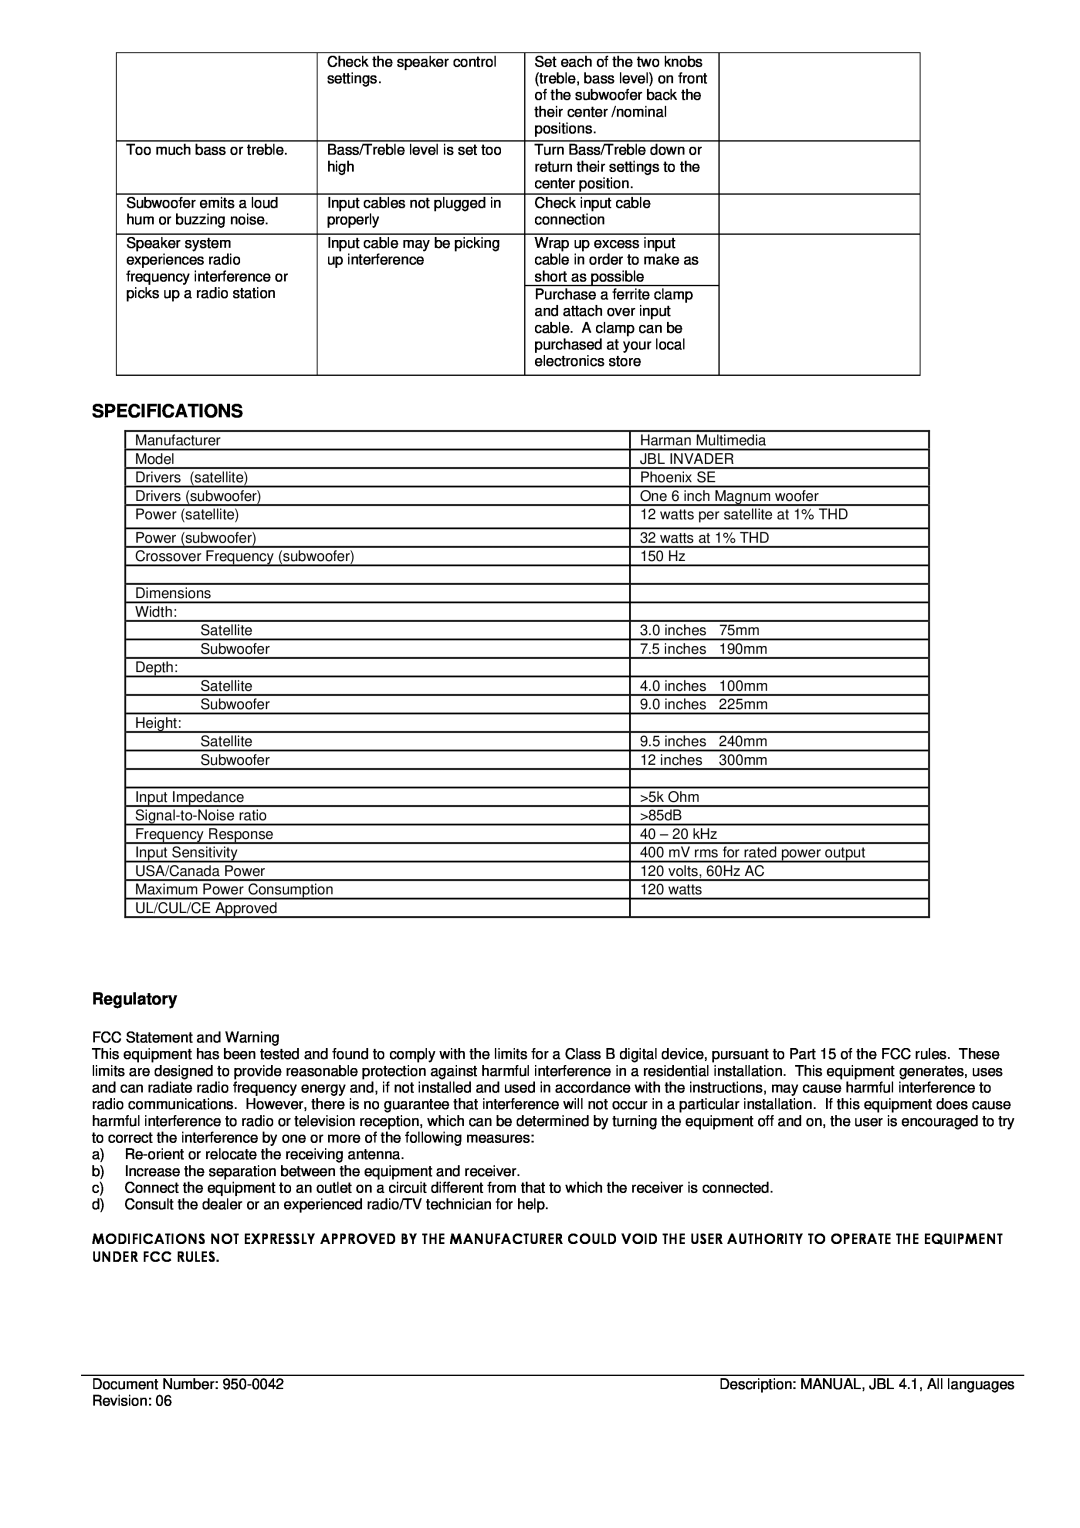 JBL INVADER manual Specifications, Regulatory 